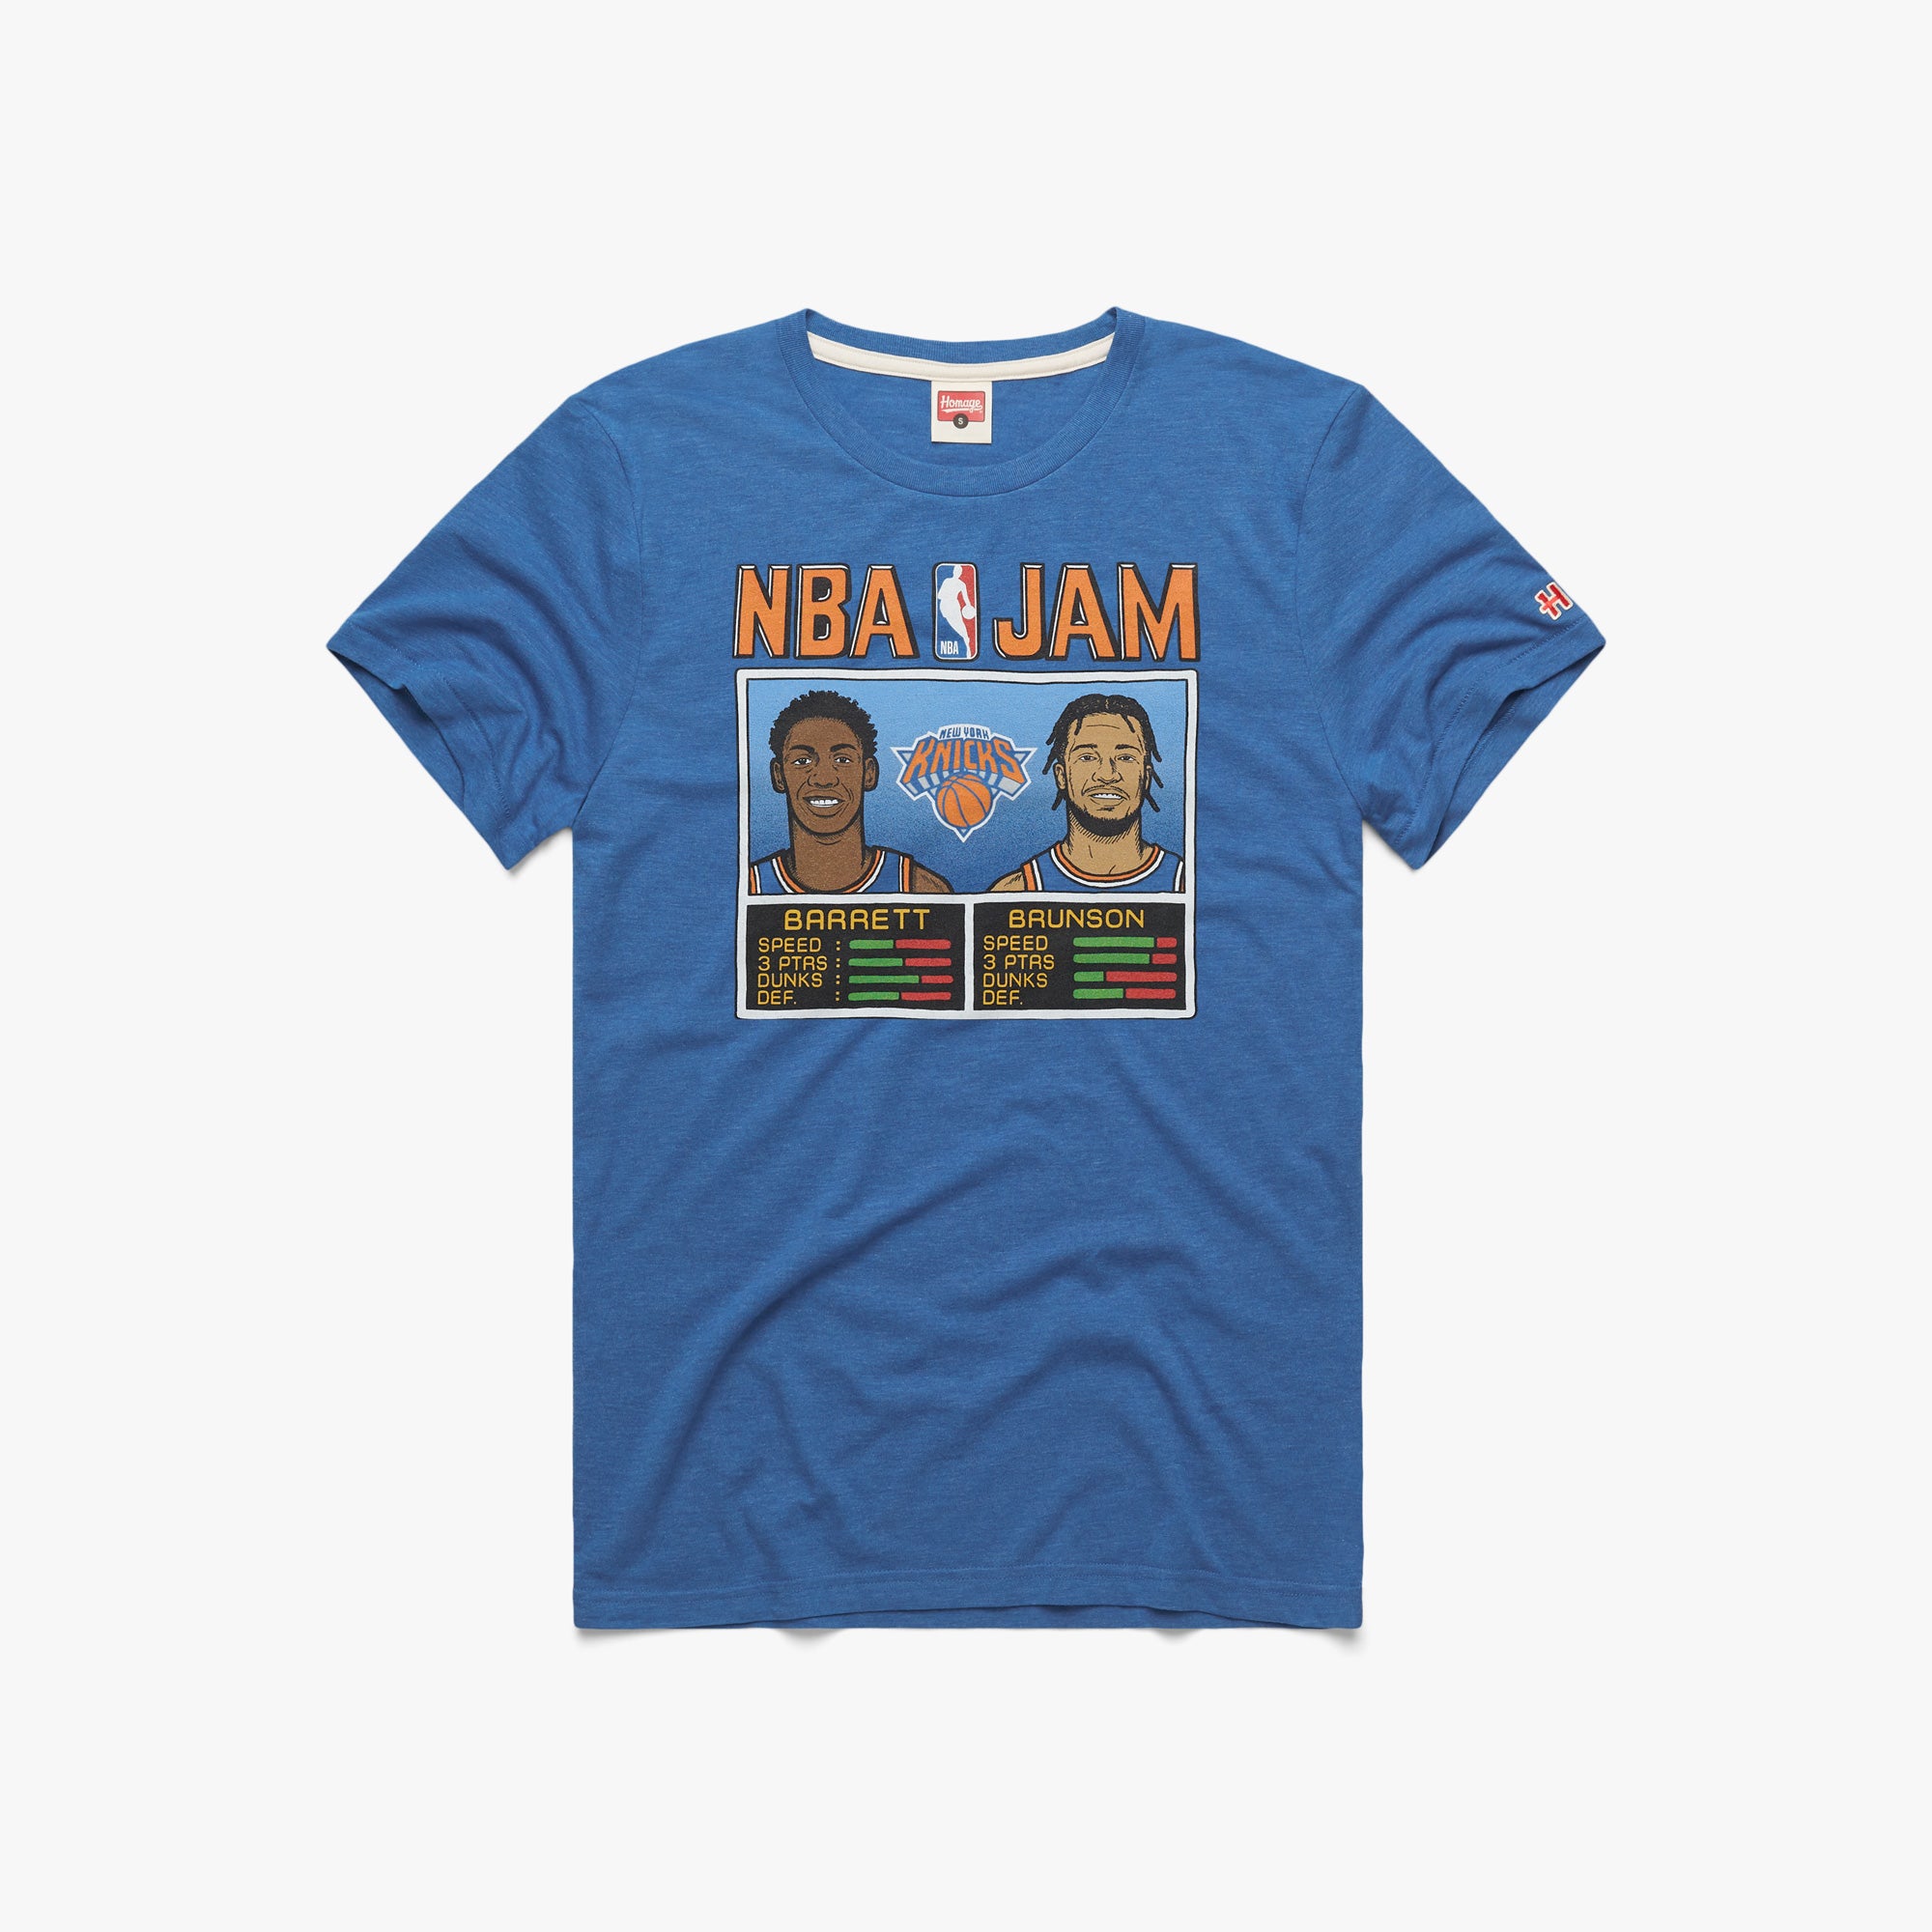 Rj Barrett Knicks Icon Edition Shirt, Nike Nba Basketball T Shirt